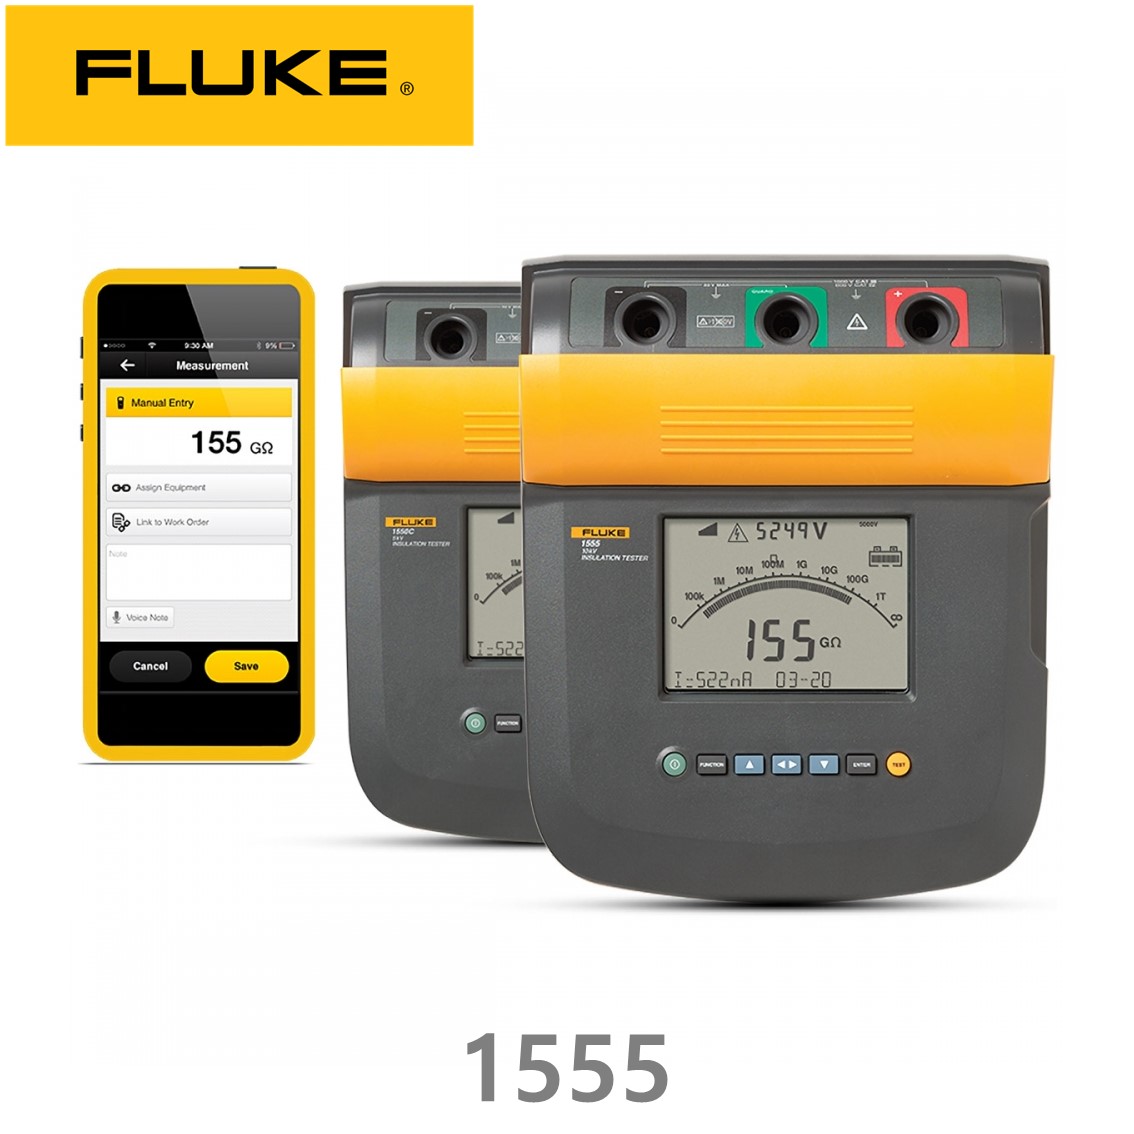 [ FLUKE 1555 KIT ] 정품 플루크 절연저항계 1555 KIT (10KV), 절연시험기, 절연저항계 키트